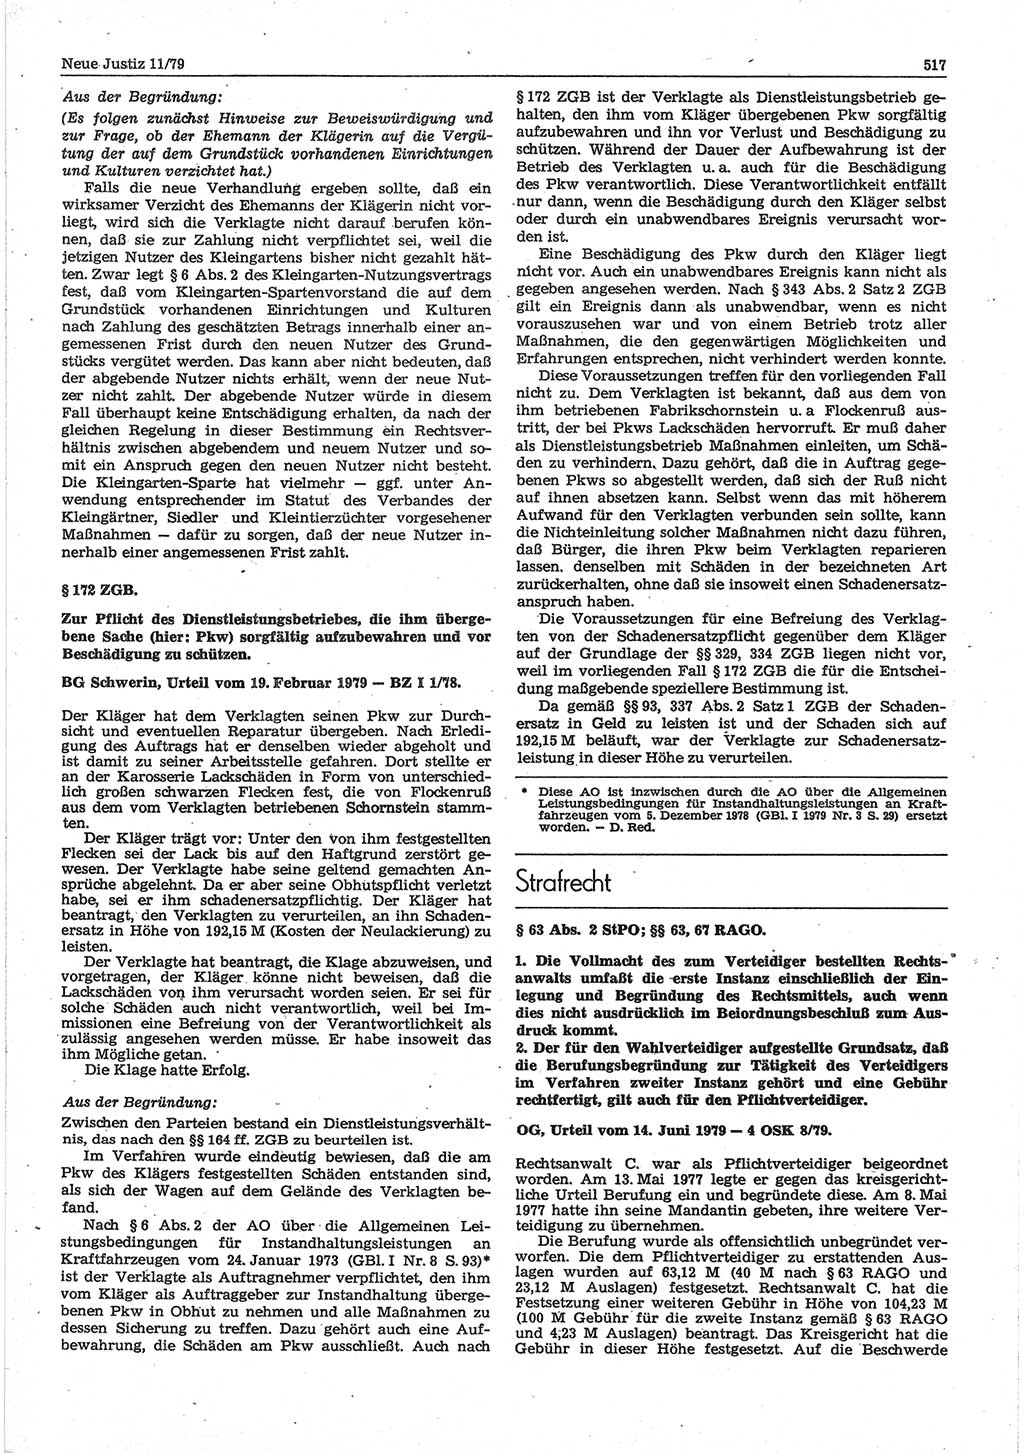 Neue Justiz (NJ), Zeitschrift für sozialistisches Recht und Gesetzlichkeit [Deutsche Demokratische Republik (DDR)], 33. Jahrgang 1979, Seite 517 (NJ DDR 1979, S. 517)